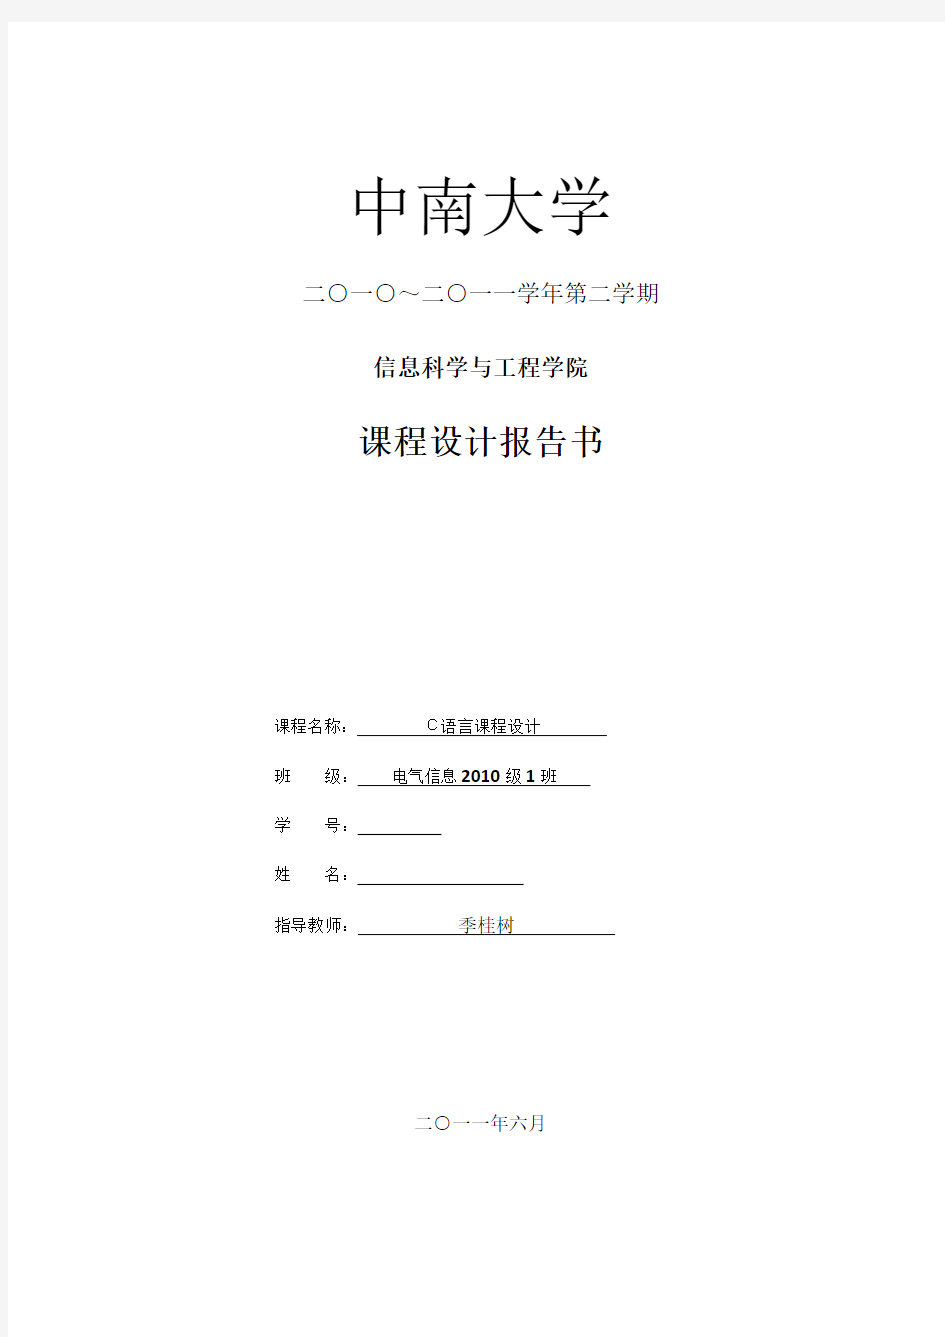 中南大学学生信息管理系统课程设计报告.docx1